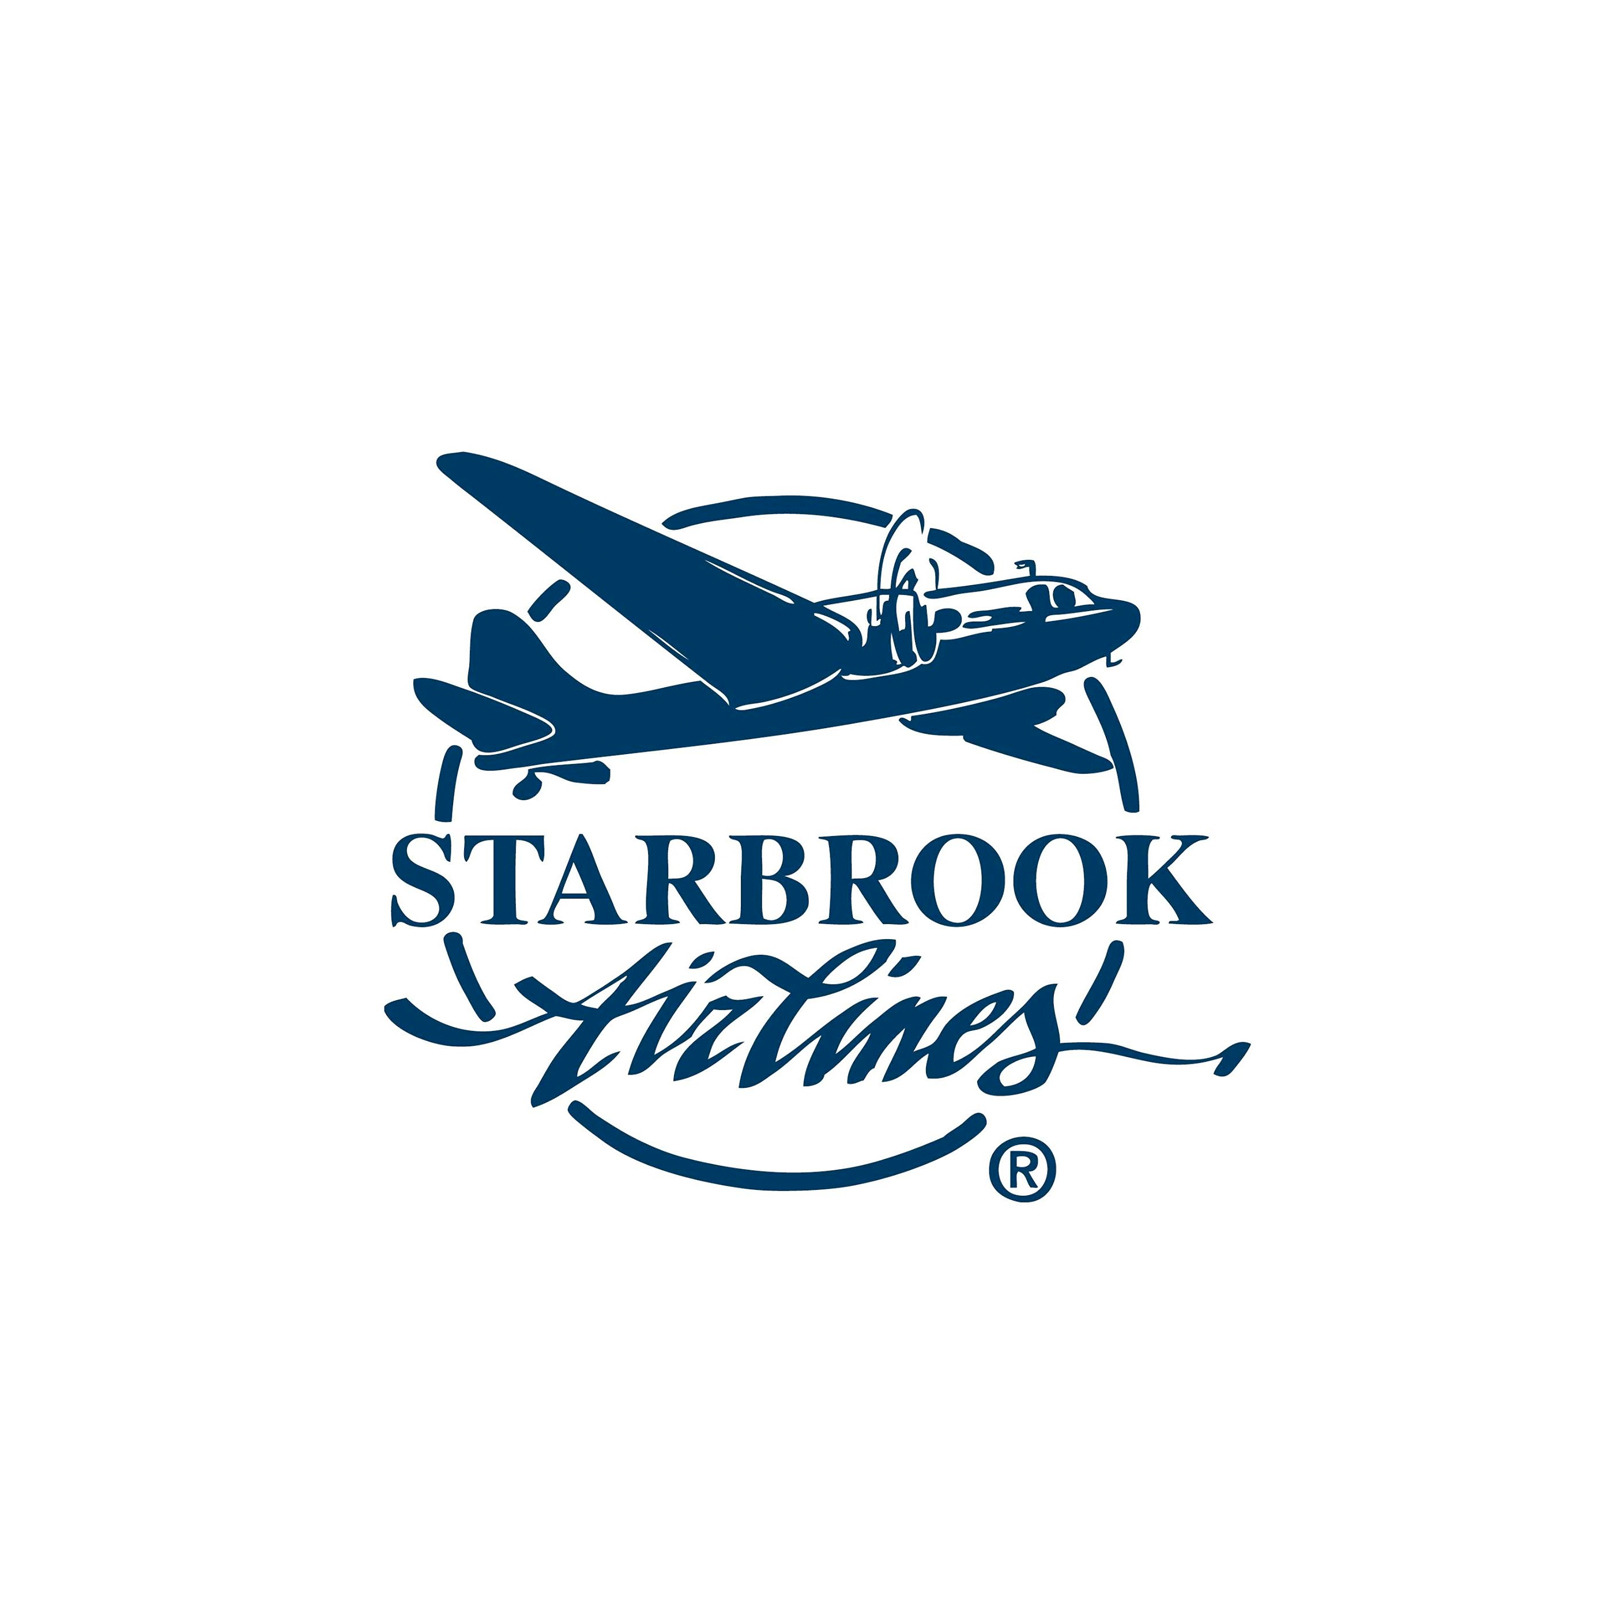 starbrookairlines-logo.jpg